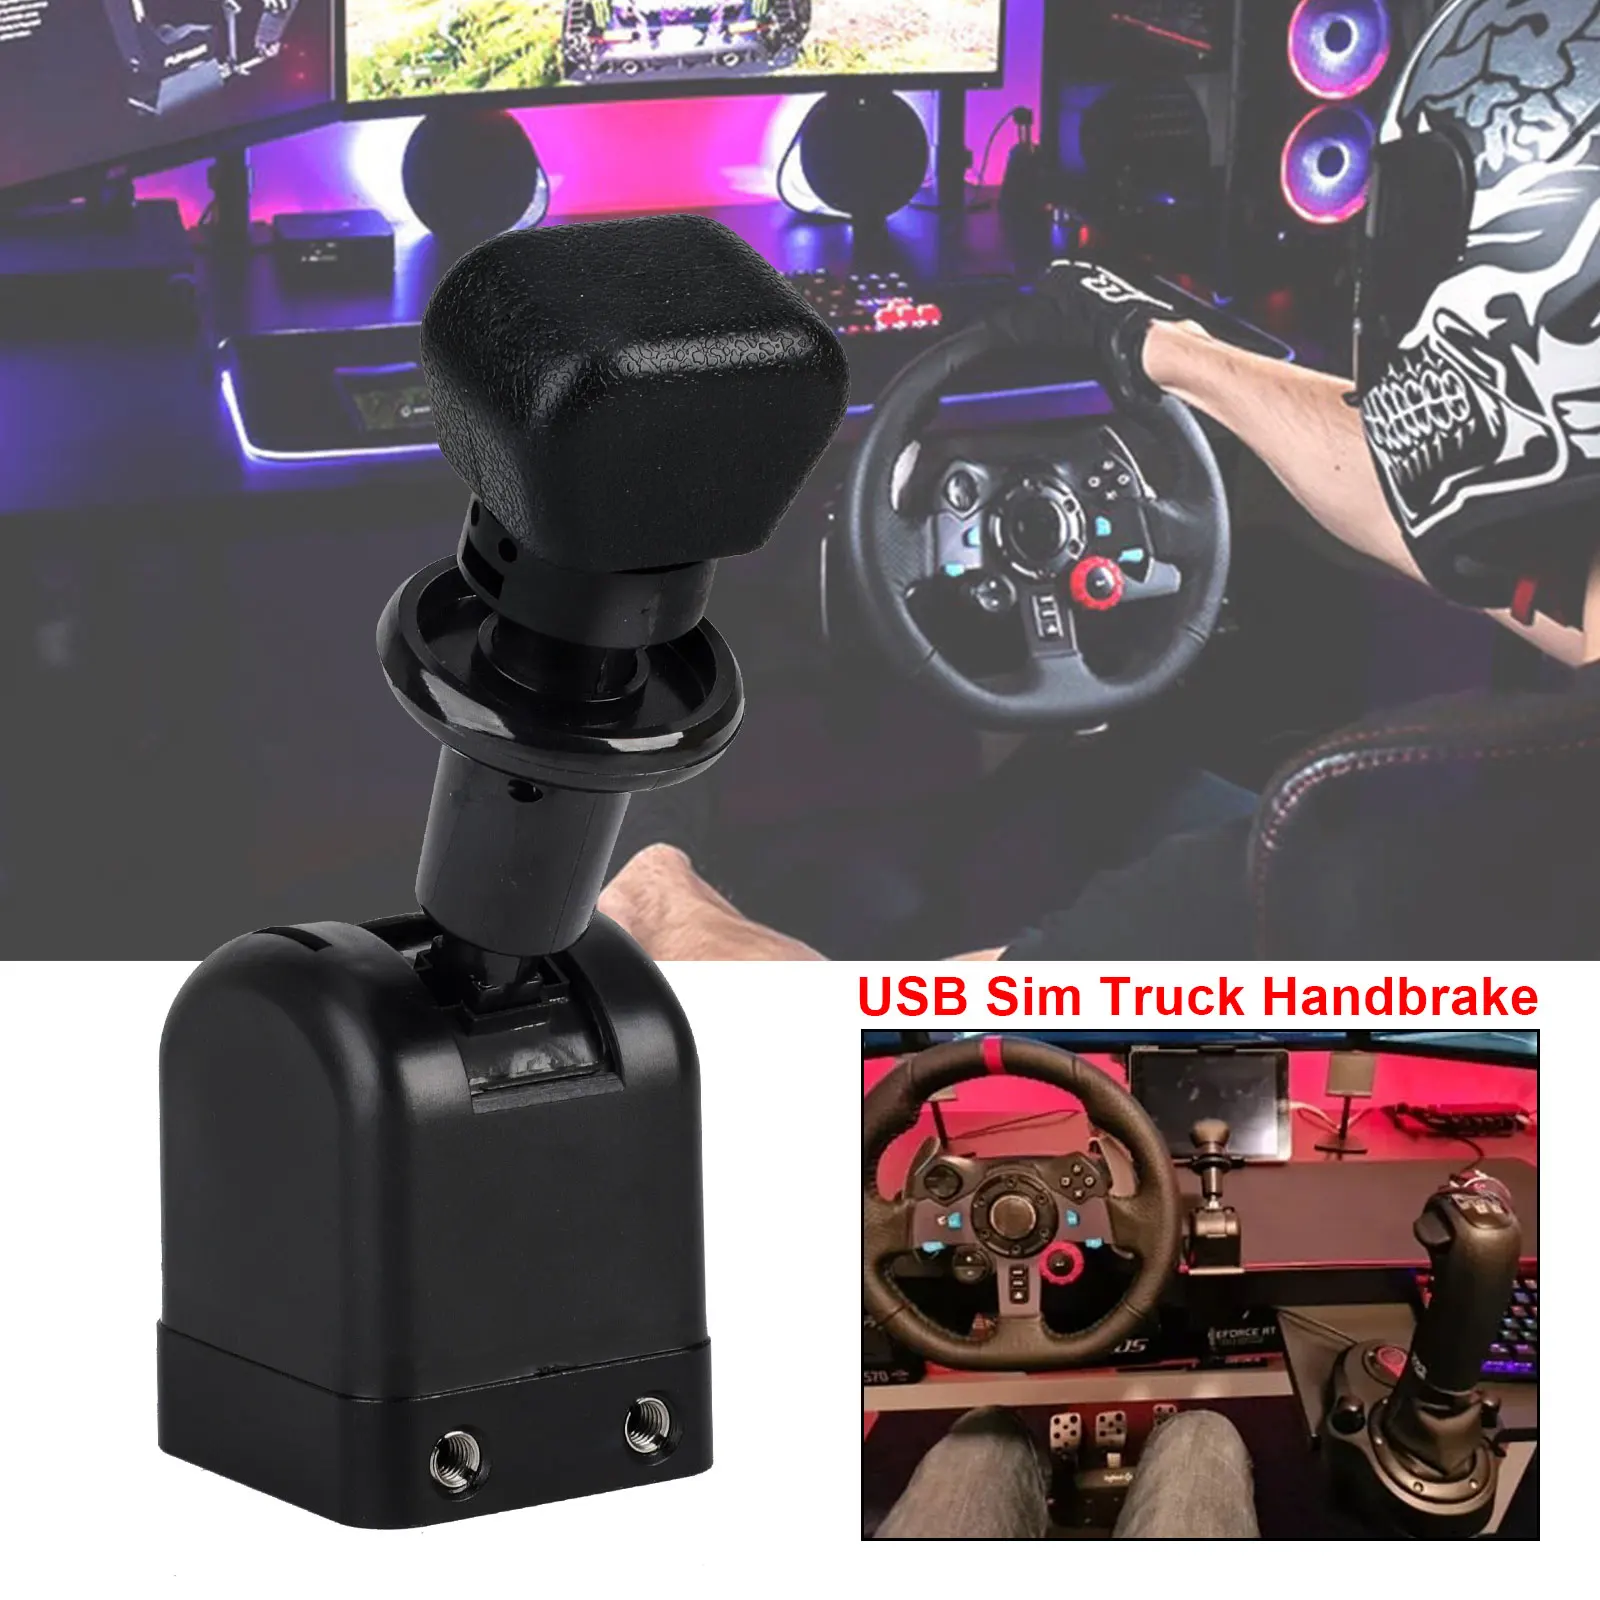 

Sim Handbrake Truck Hand Brake USB For Logitech G27 G29 G923 THRUSTMASTER T300RS T-GT For ETS2 European / American Truck Games